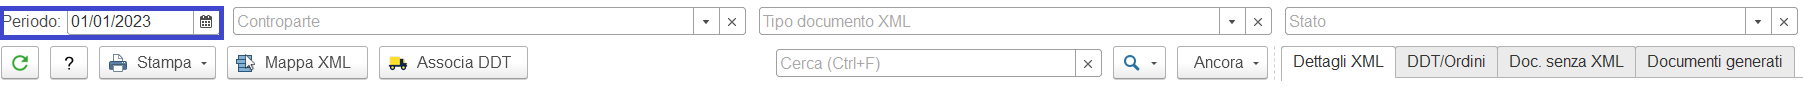 Filtro file XML